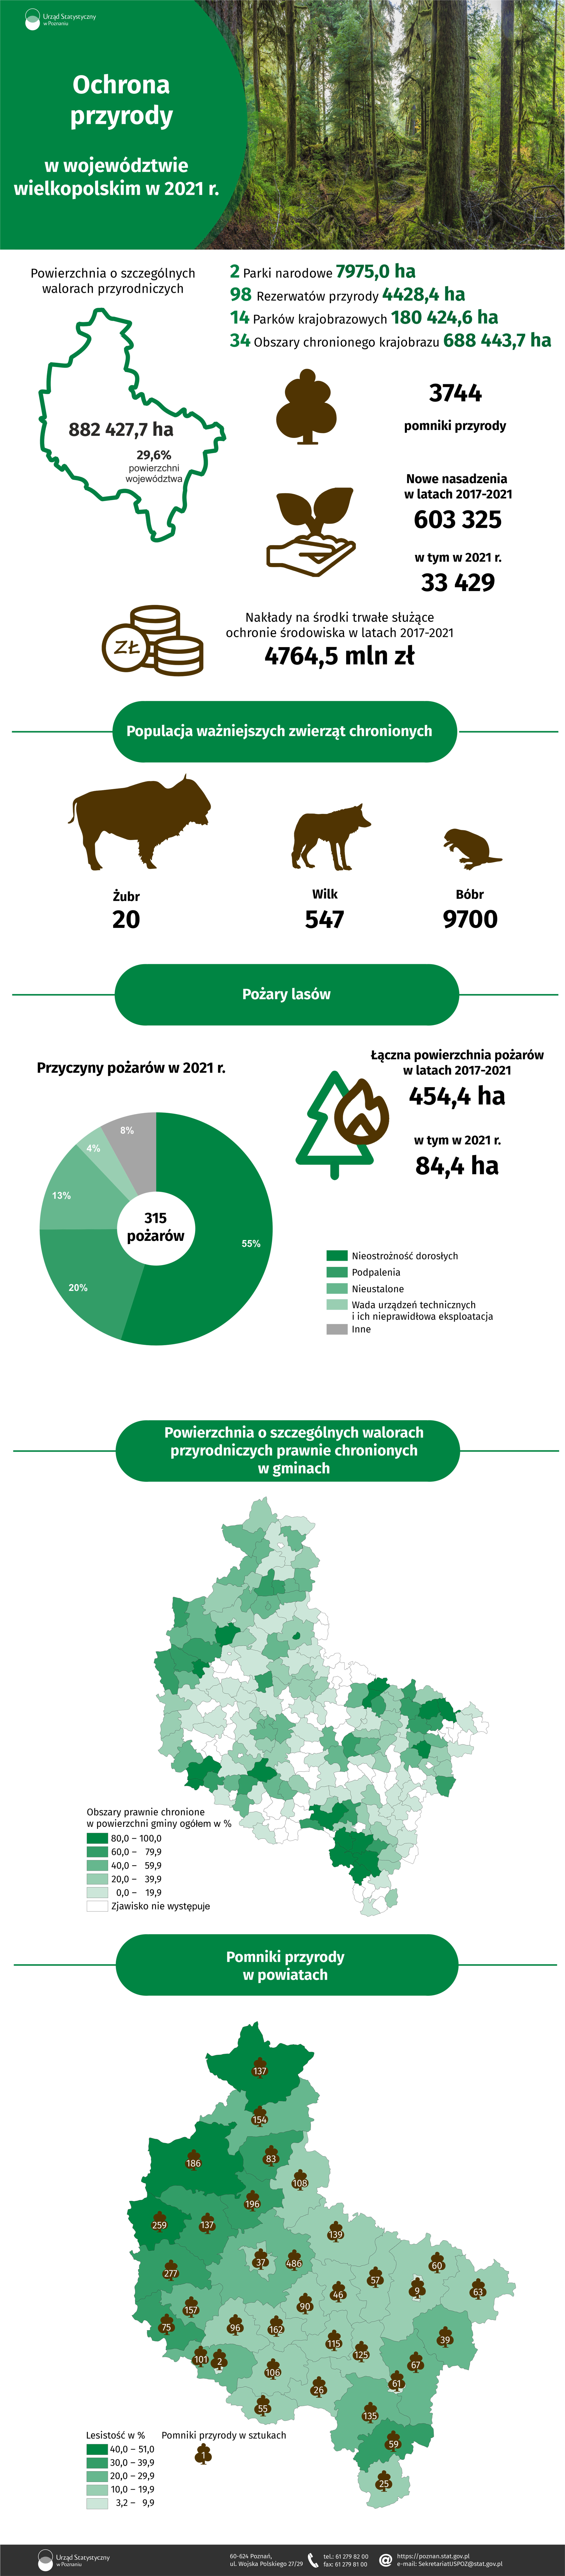 Infografika dotyczy ochrony przyrody w województwie wielkopolskim w 2021 r.